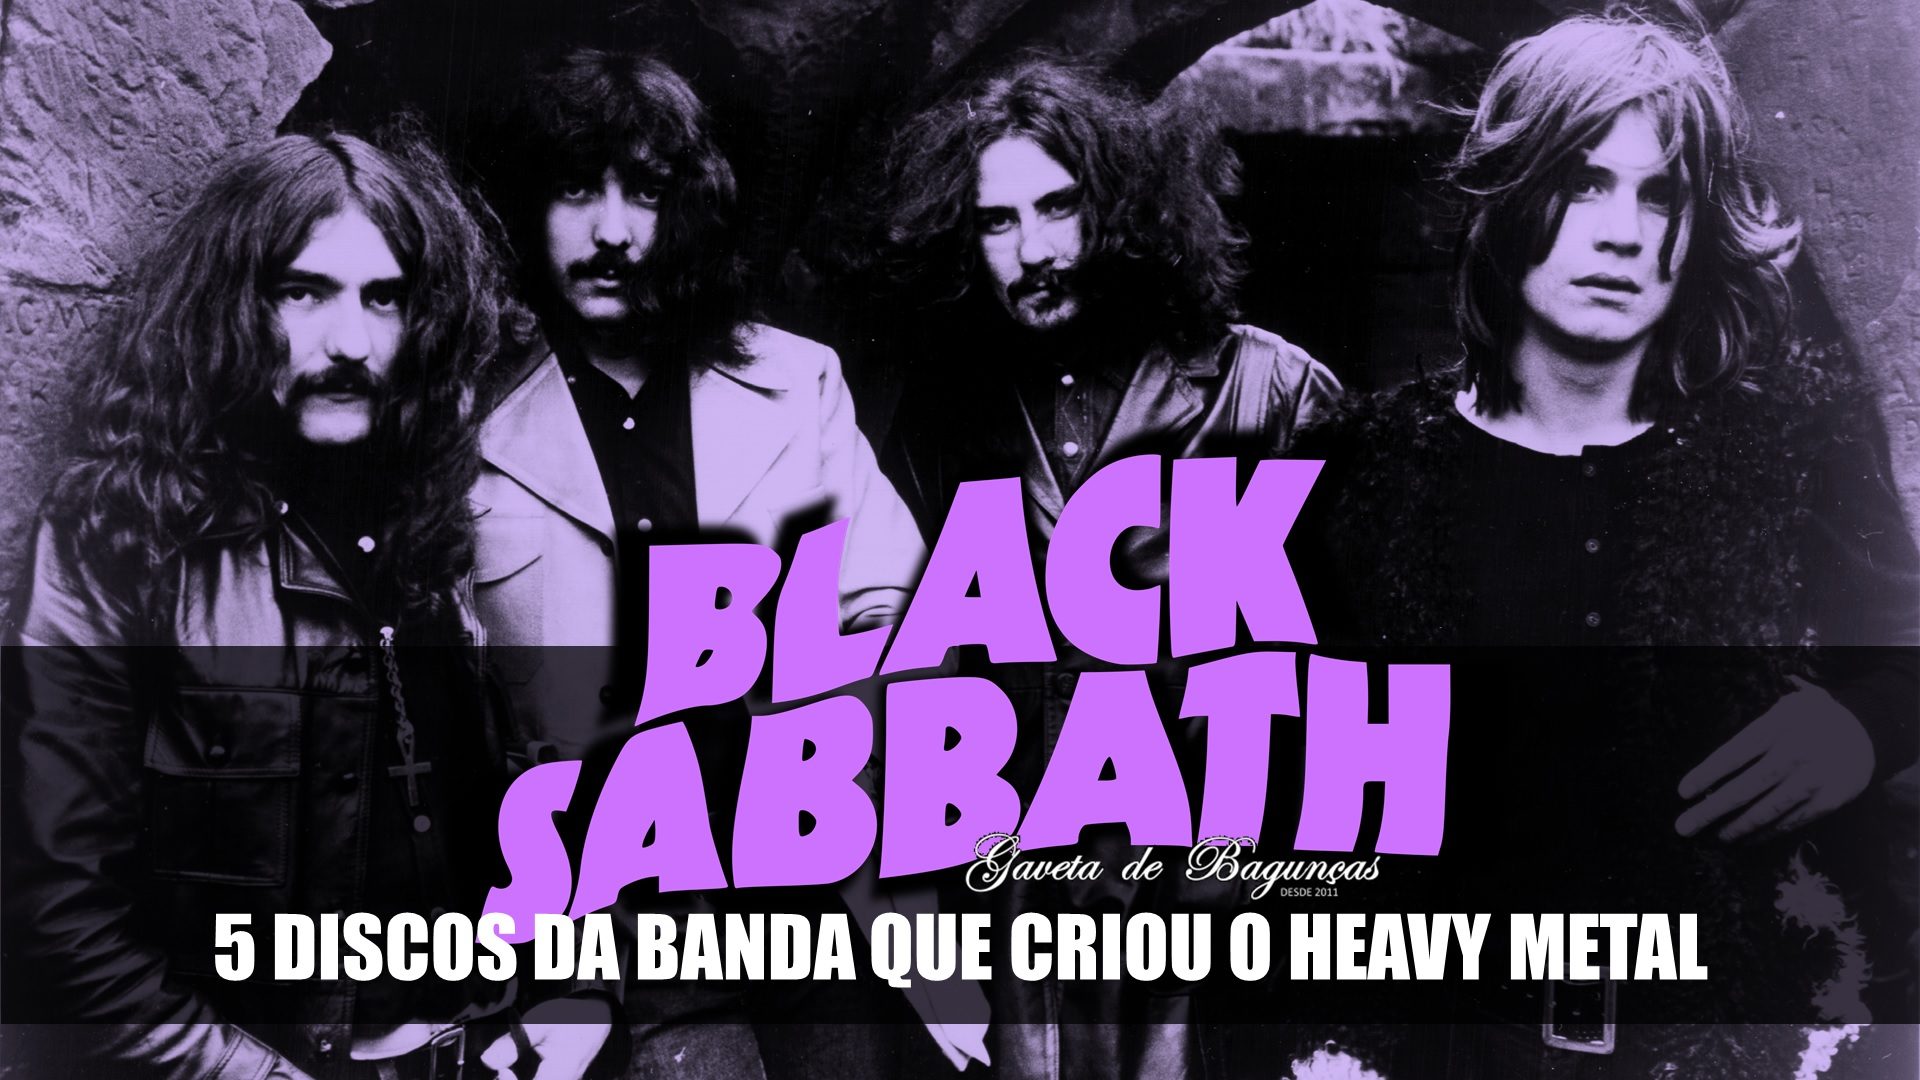 Black Sabbath - best melhores albumns albuns discos records